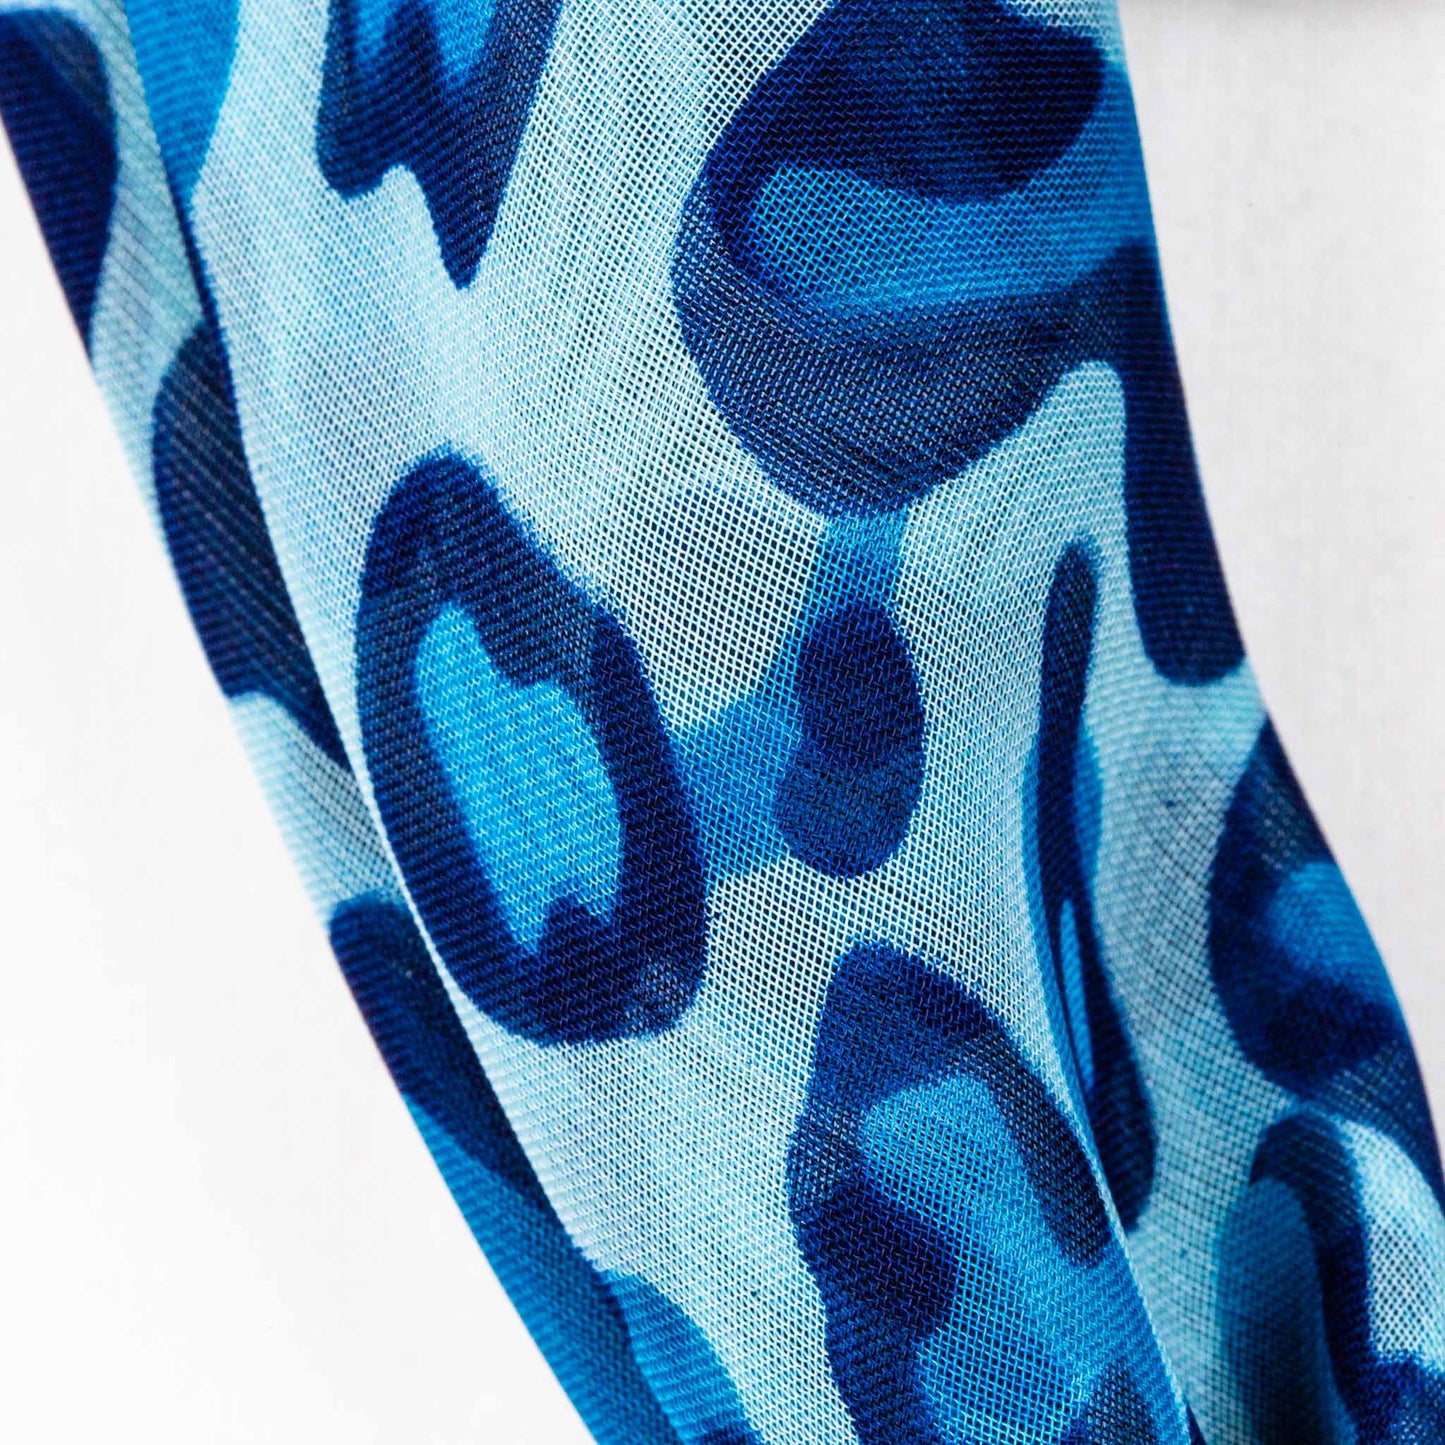 Eșarfă damă din mătase cu animal print și dungi, 65 x 65 cm - Albastru